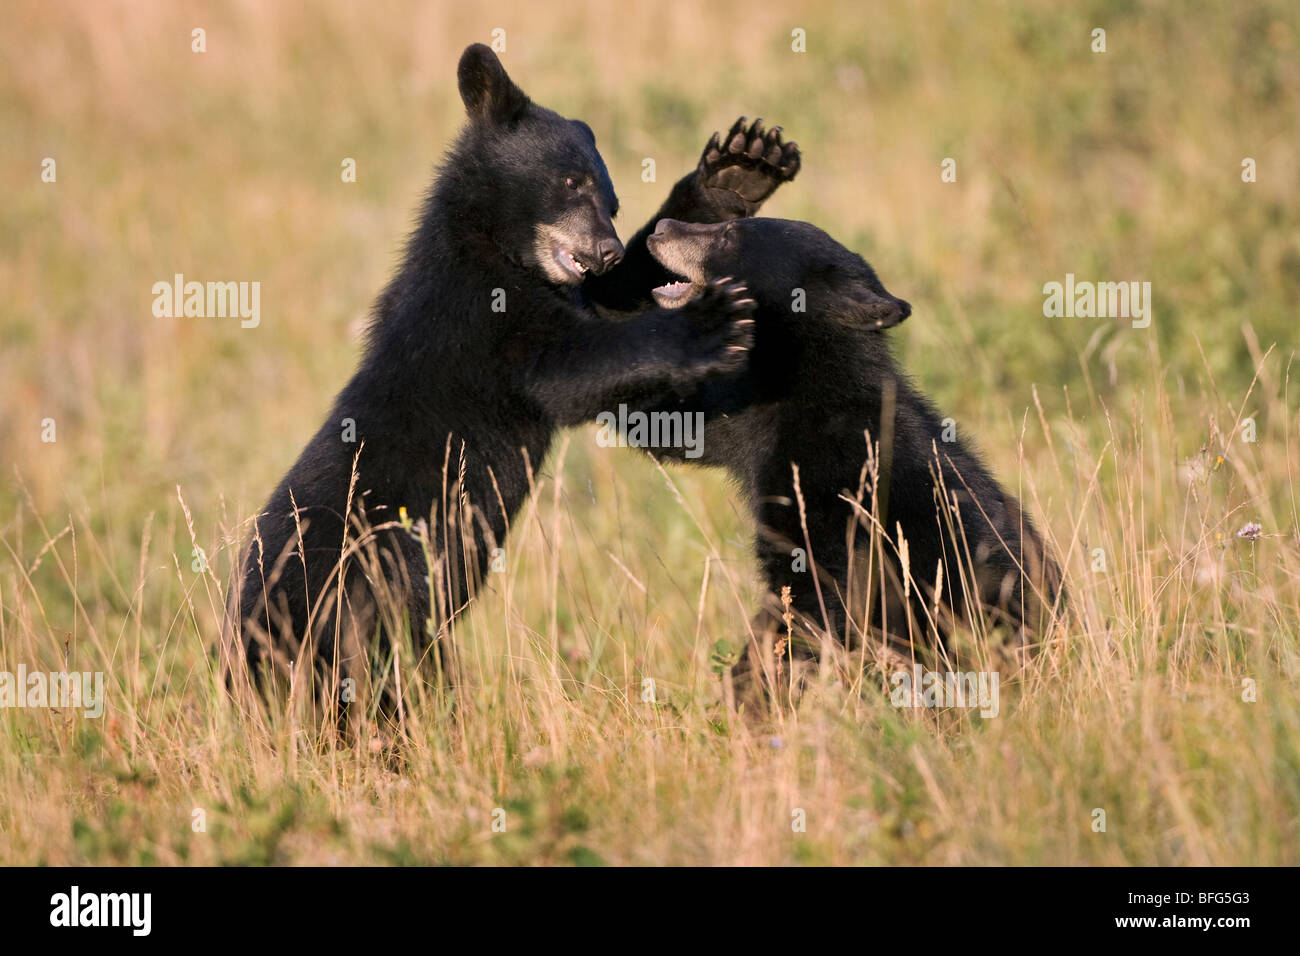 Black bear cubs (Ursus americanus), play wrestling, Waterton Lakes National Park, Alberta, Canada. Stock Photo